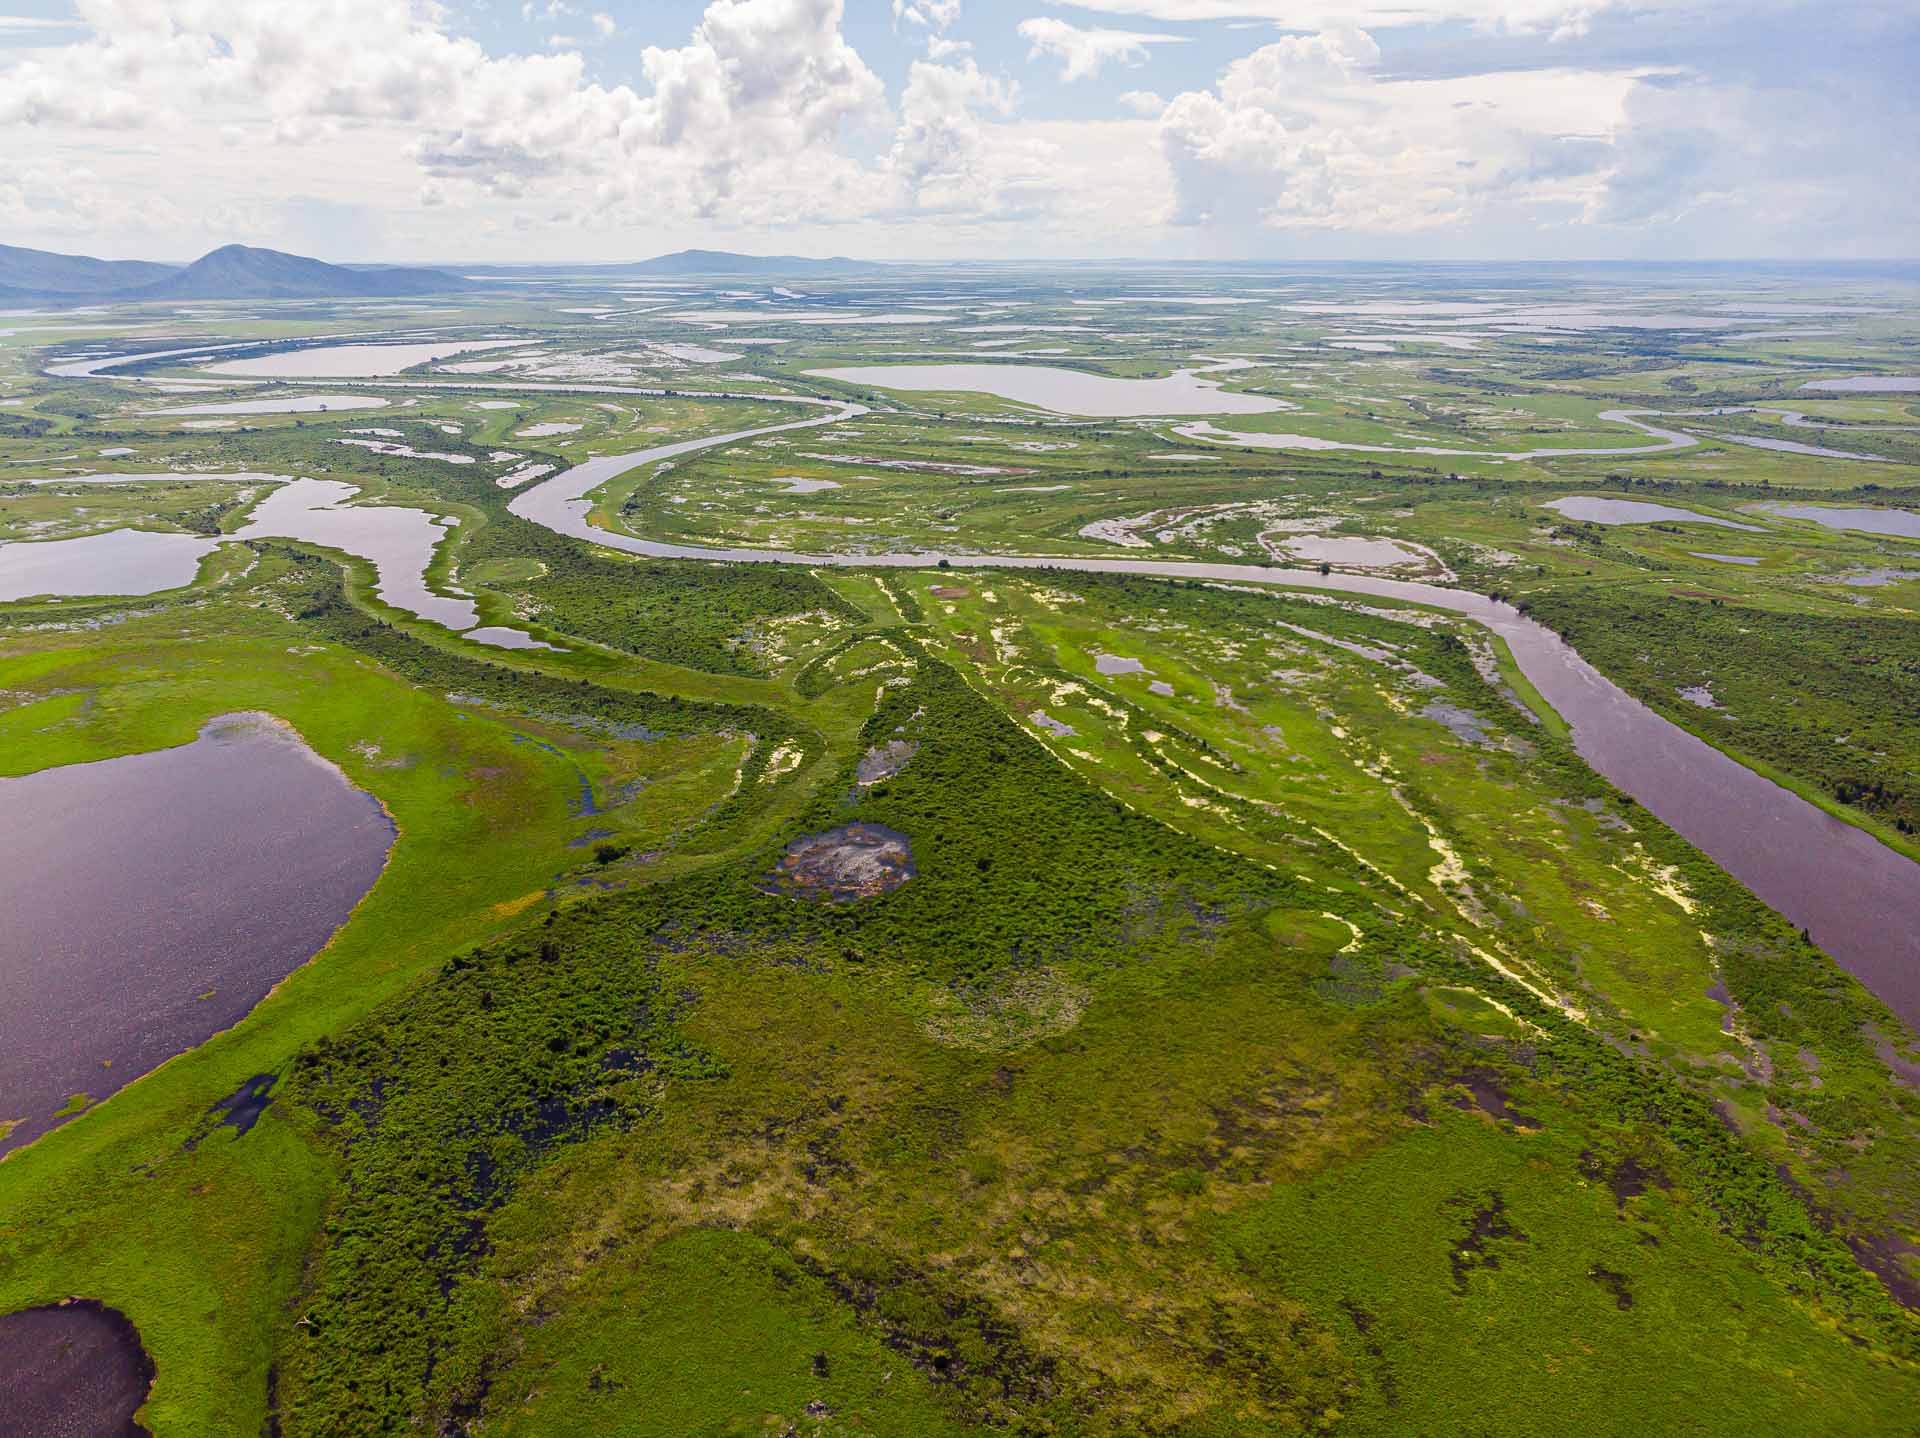 Vista aérea do Pantanal com áreas alagadas